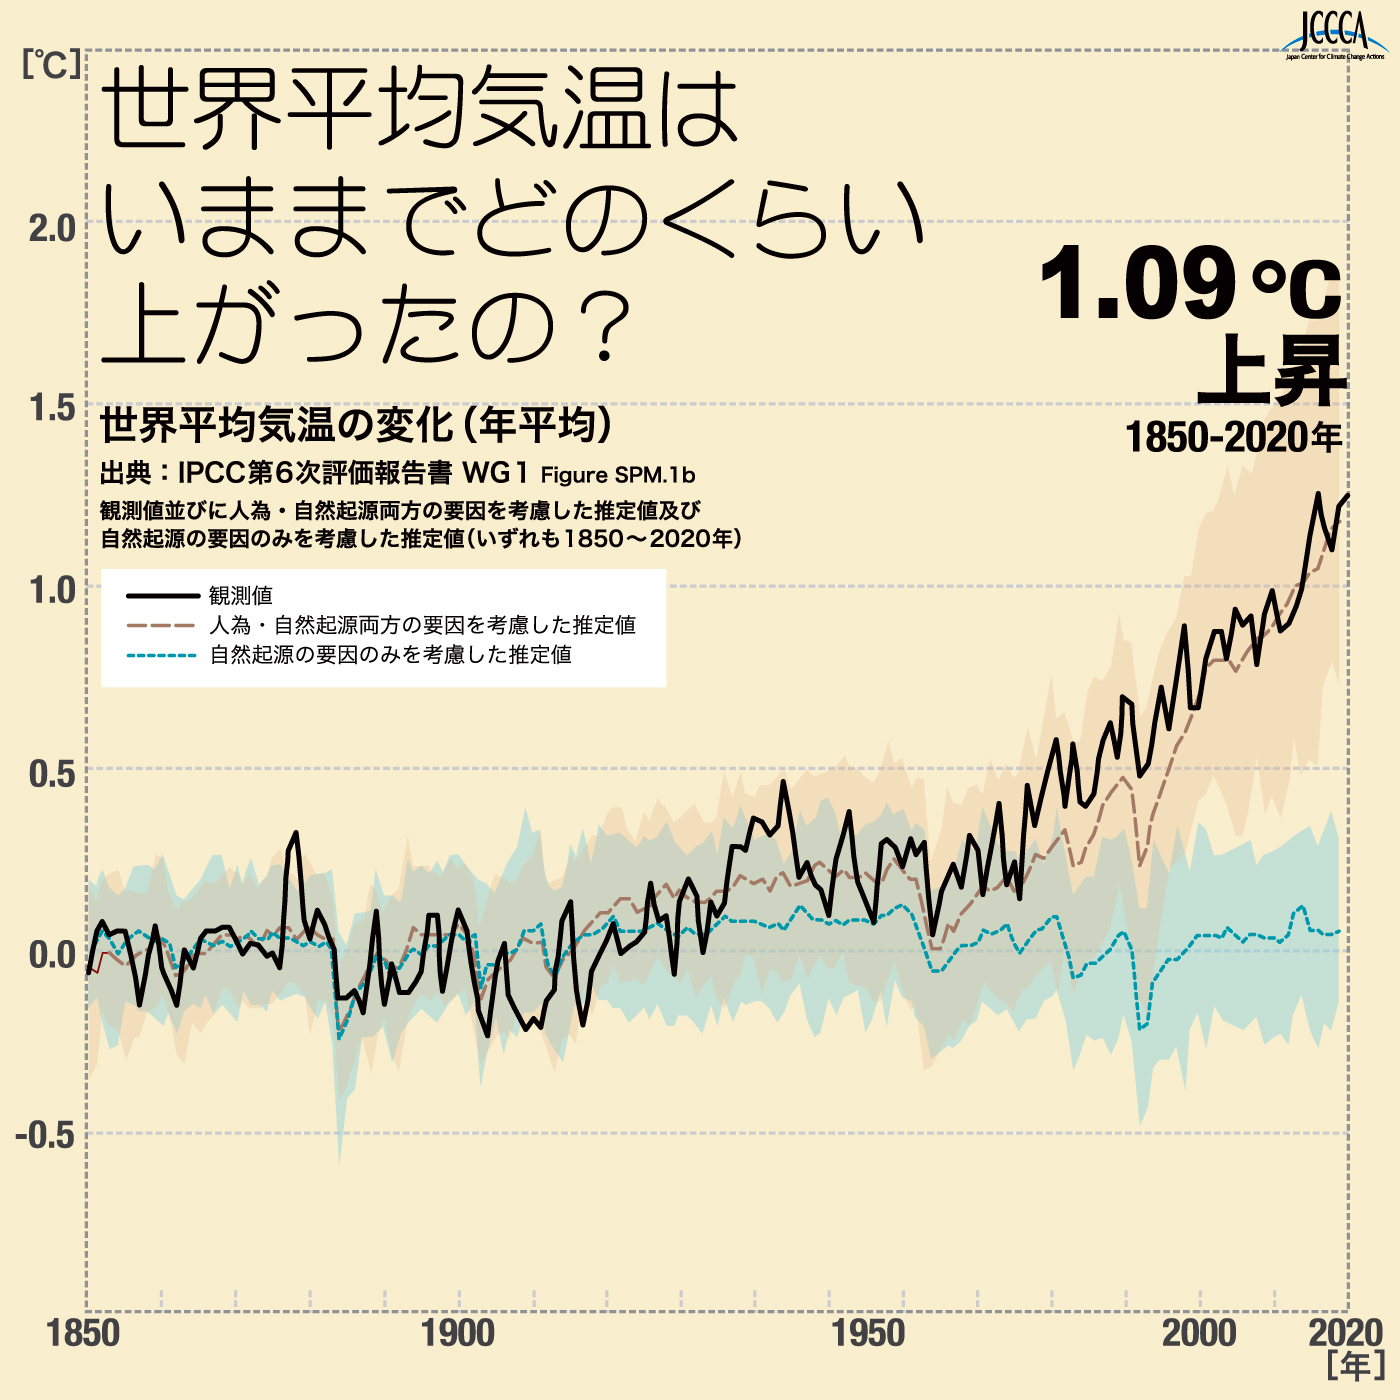 世界平均気温の上昇